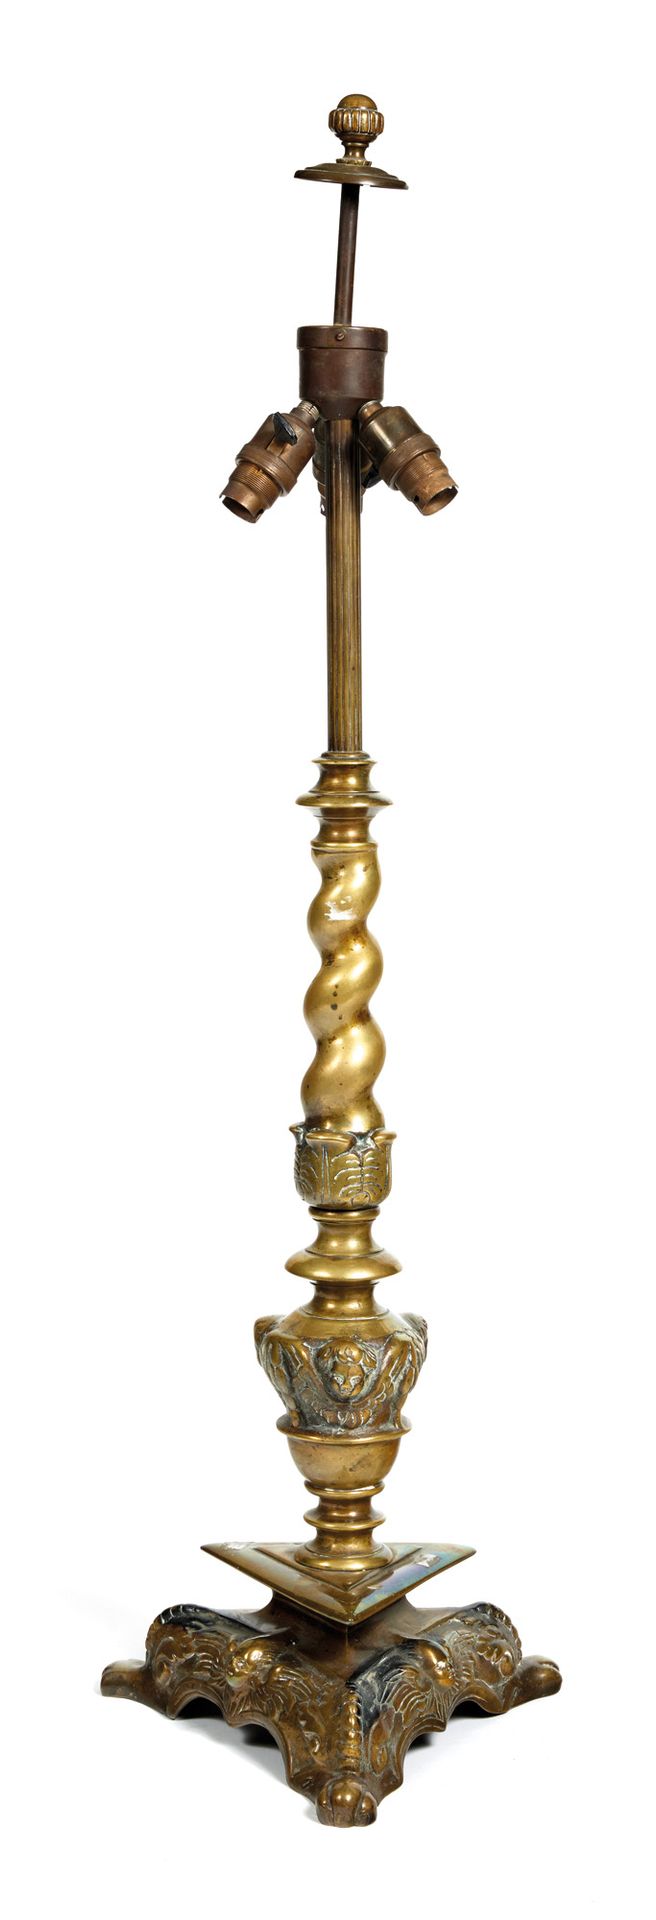 Pique-cierge Piedistallo in bronzo dorato

in bronzo dorato, colonna con busto e&hellip;